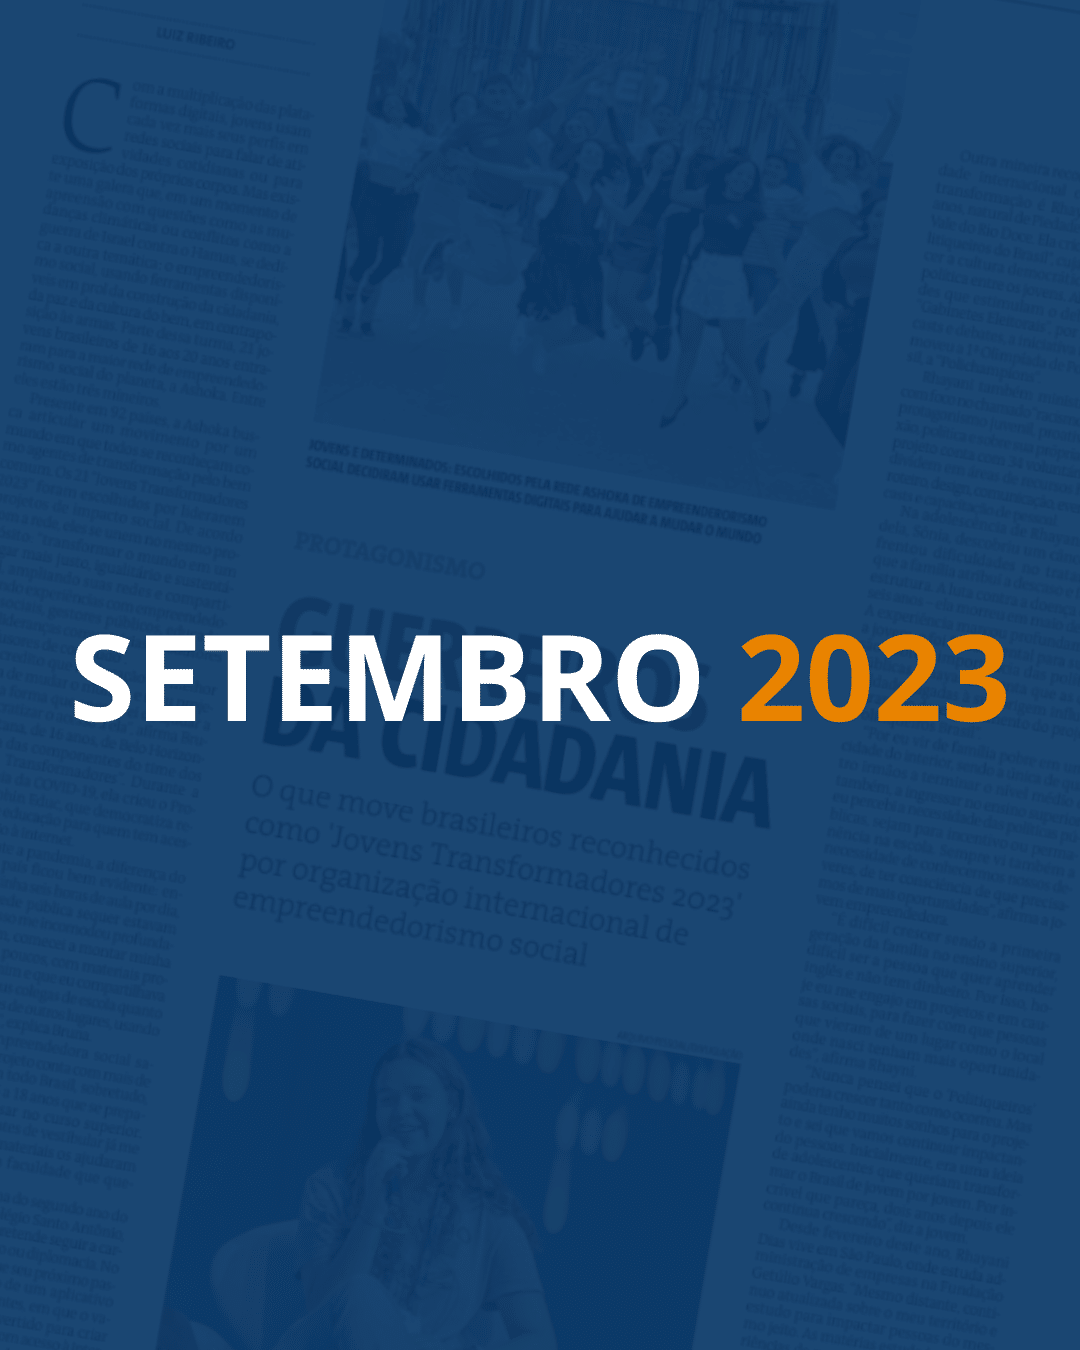 Fundo com uma página de jornal e um filtro azul escuro por cima. Em destaque, lê-se "SETEMBRO" em branco e "2023" em laranja